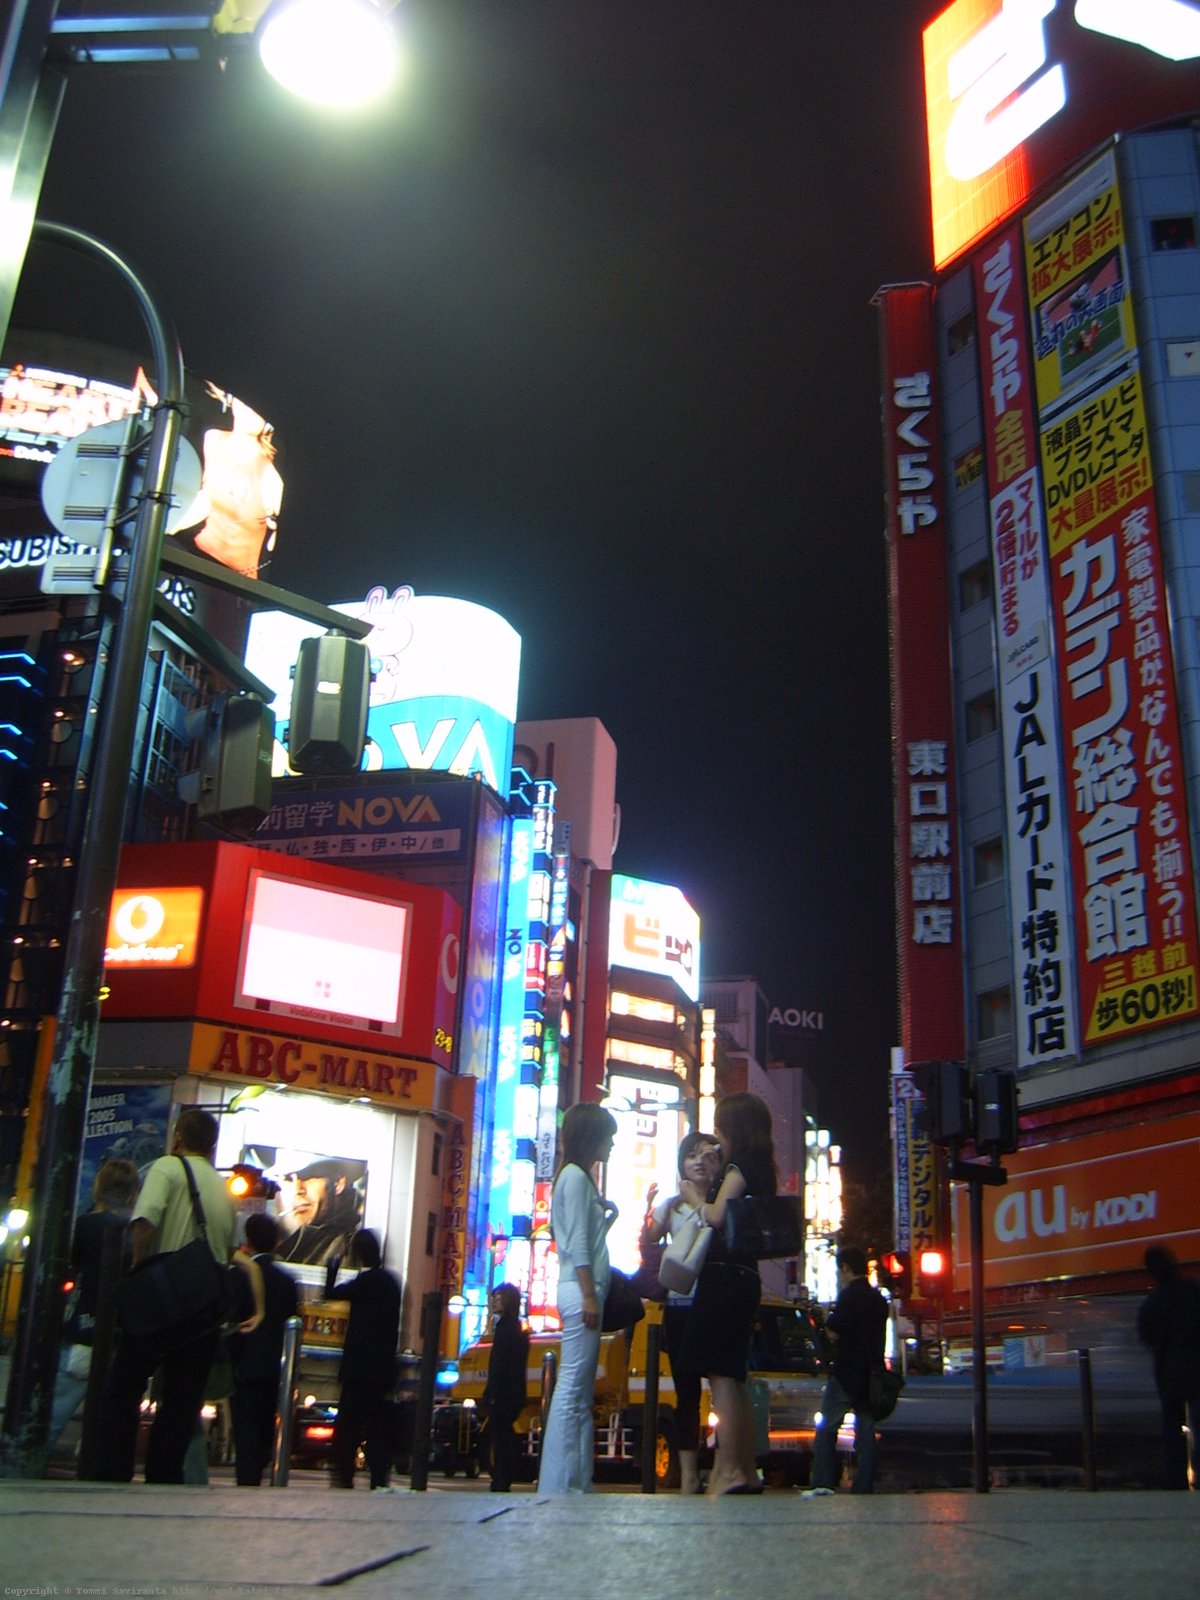 Day #2: Shinjuku at night